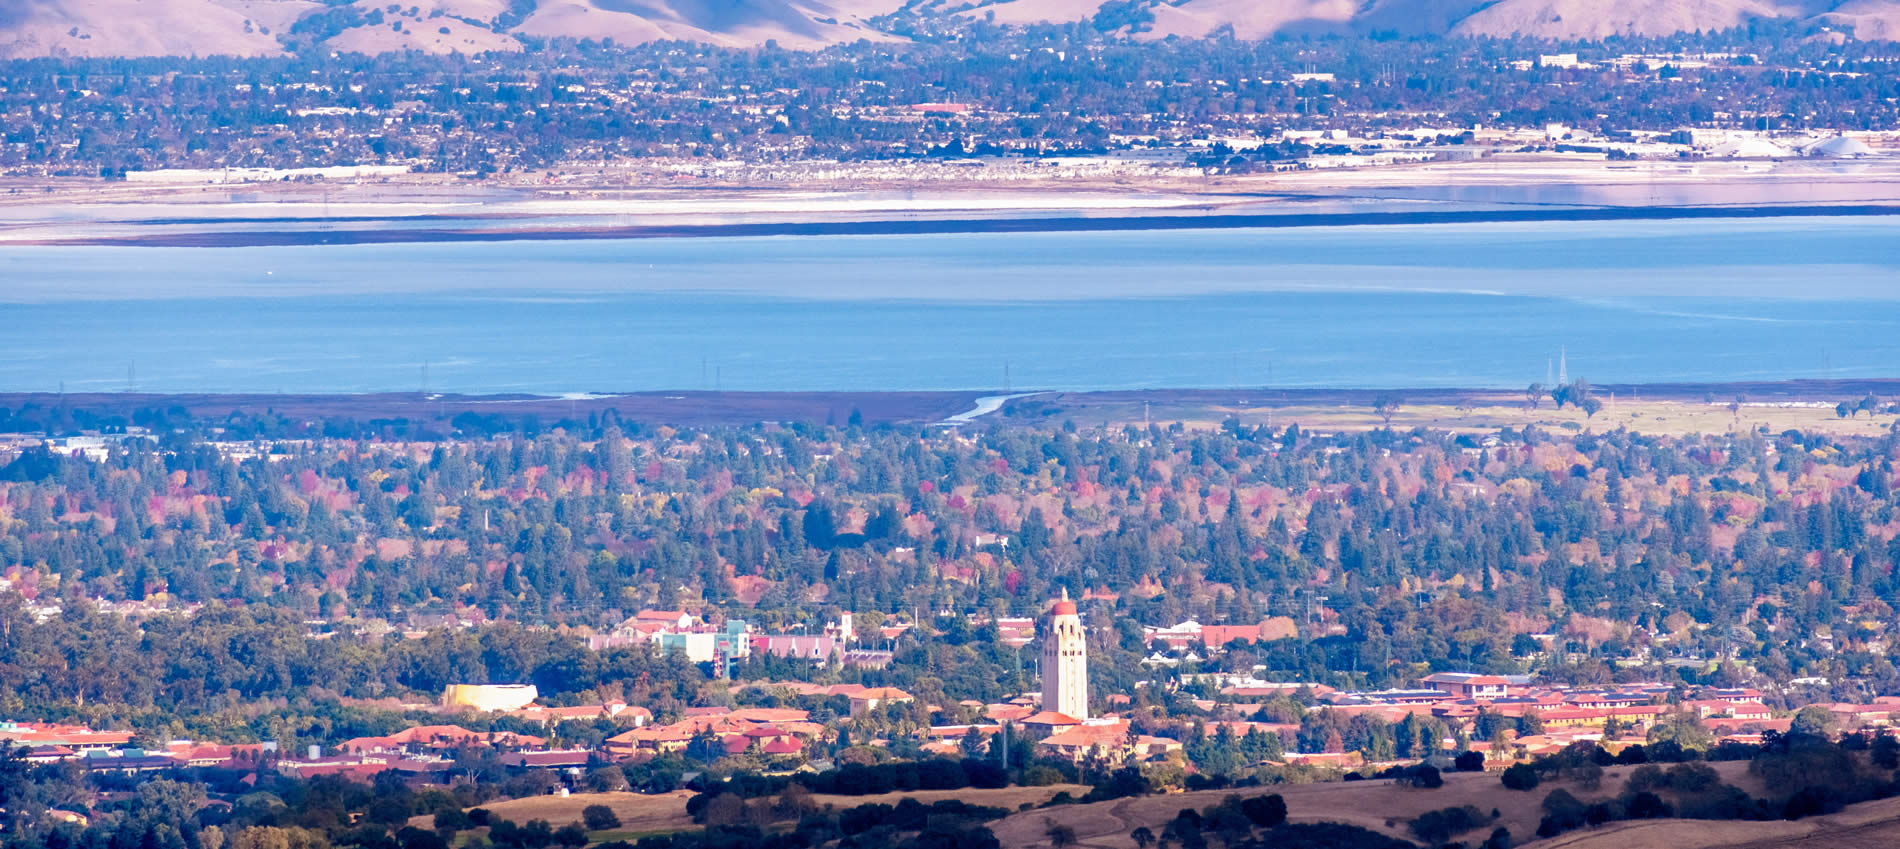 palo alto california overview